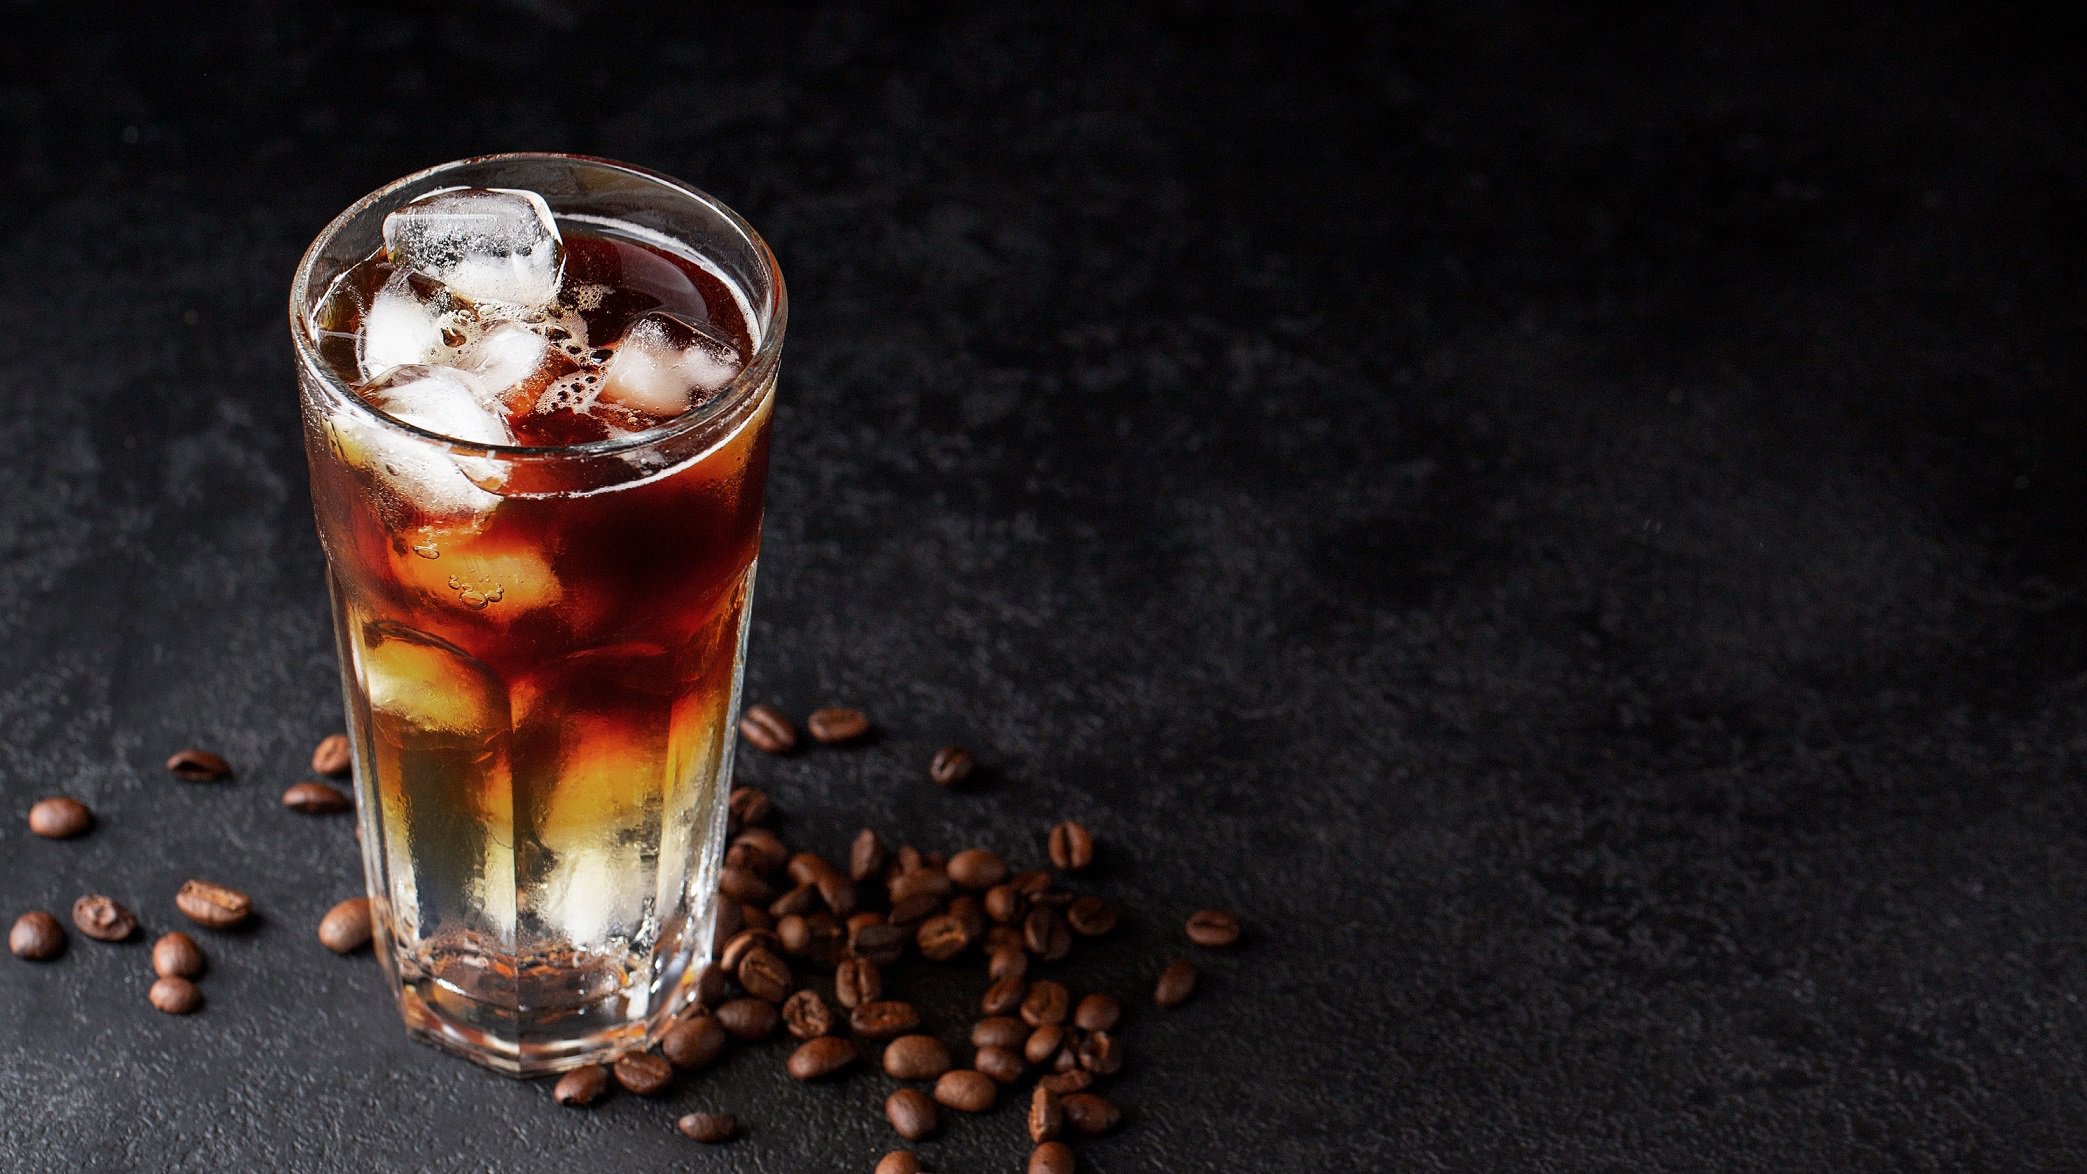 Ein Glas Espresso Tonic mit Eiswürfeln in dunklem Setting, daneben liegen Kaffeebohnen.